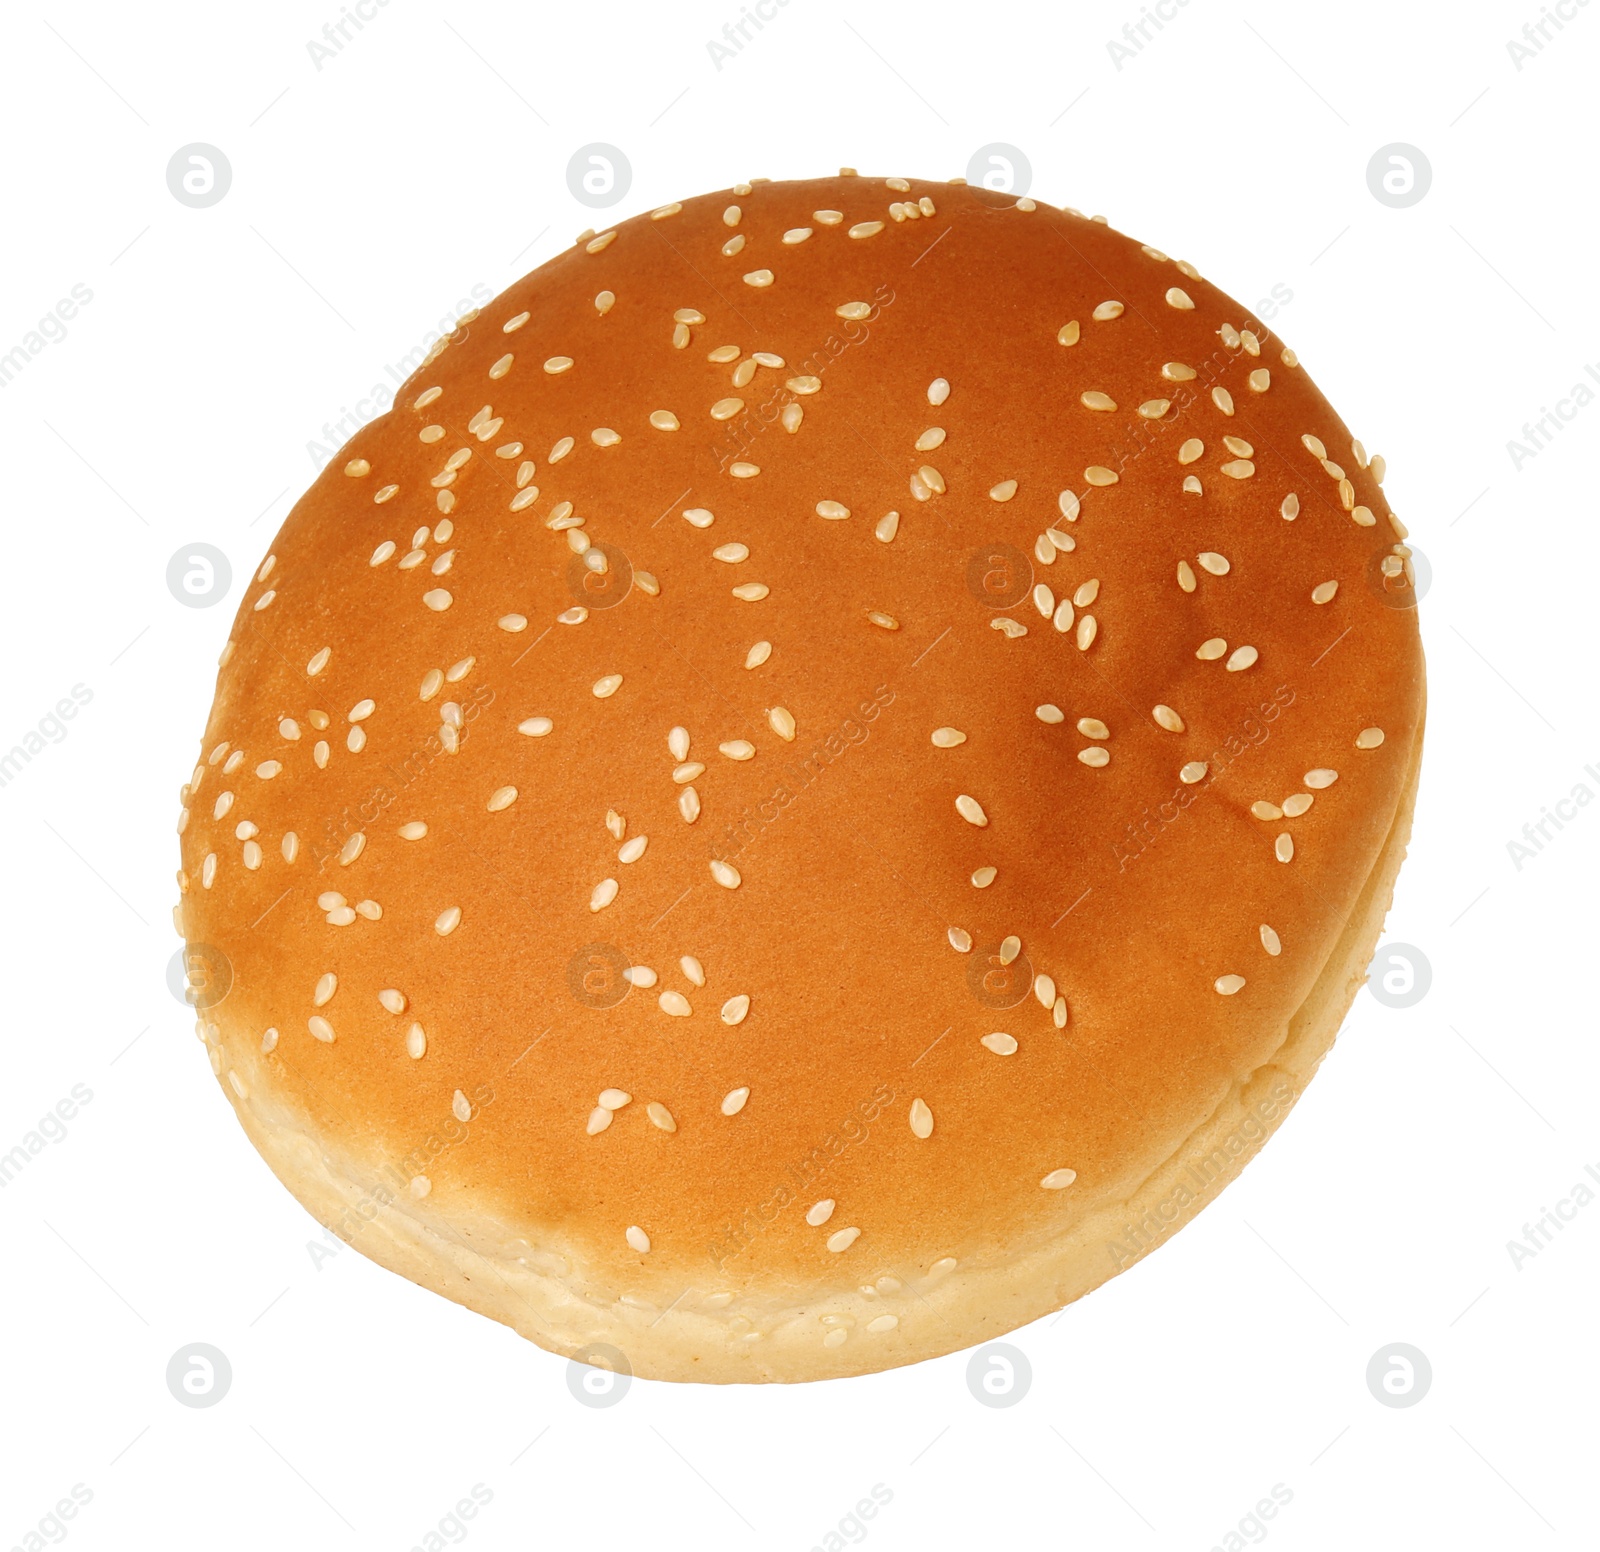 Photo of One fresh hamburger bun isolated on white